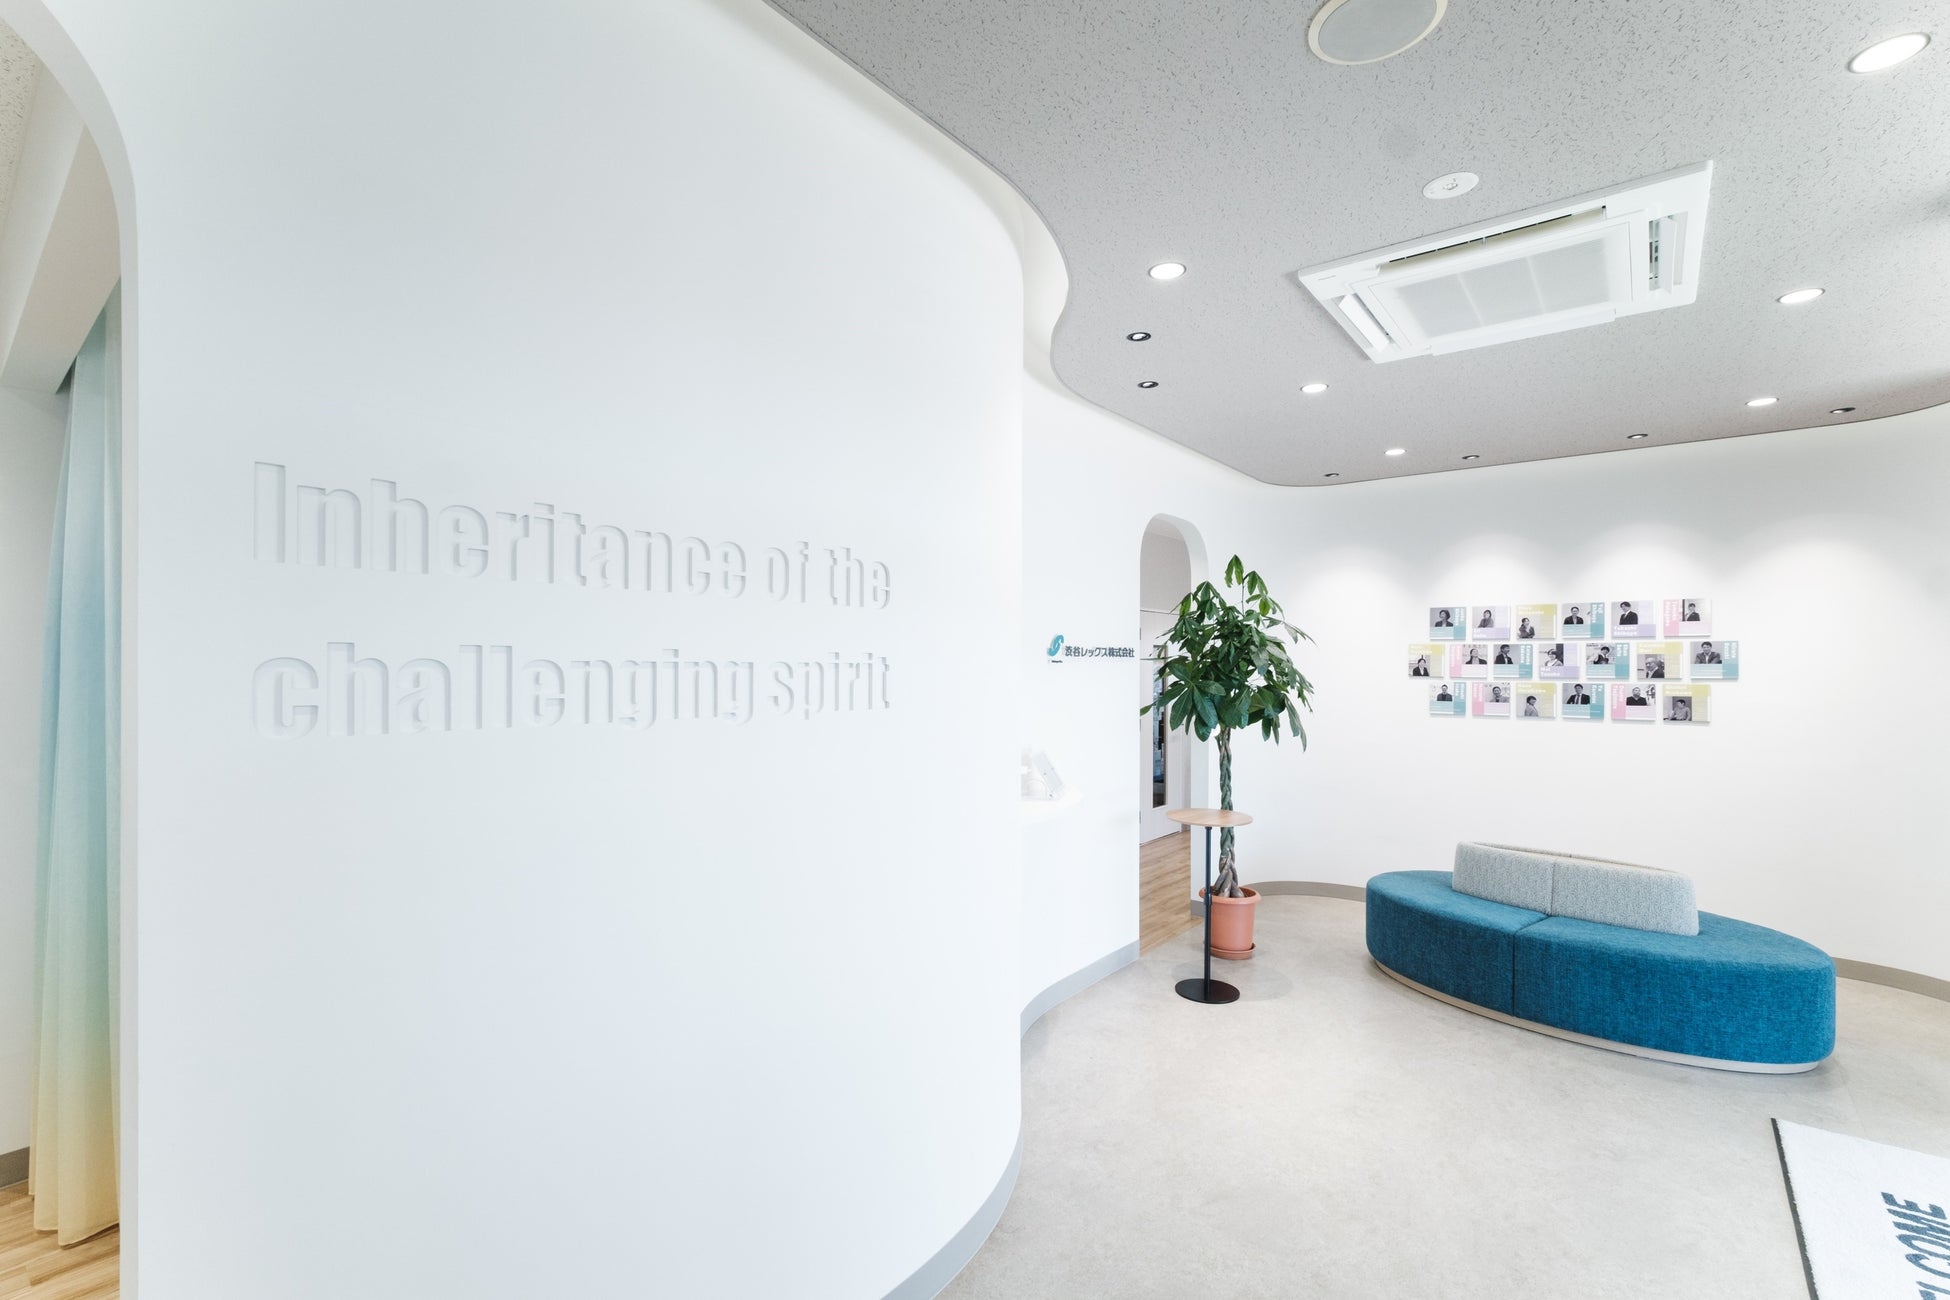 渋谷レックスのオフィスが、⽇経ニューオフィス賞を受賞